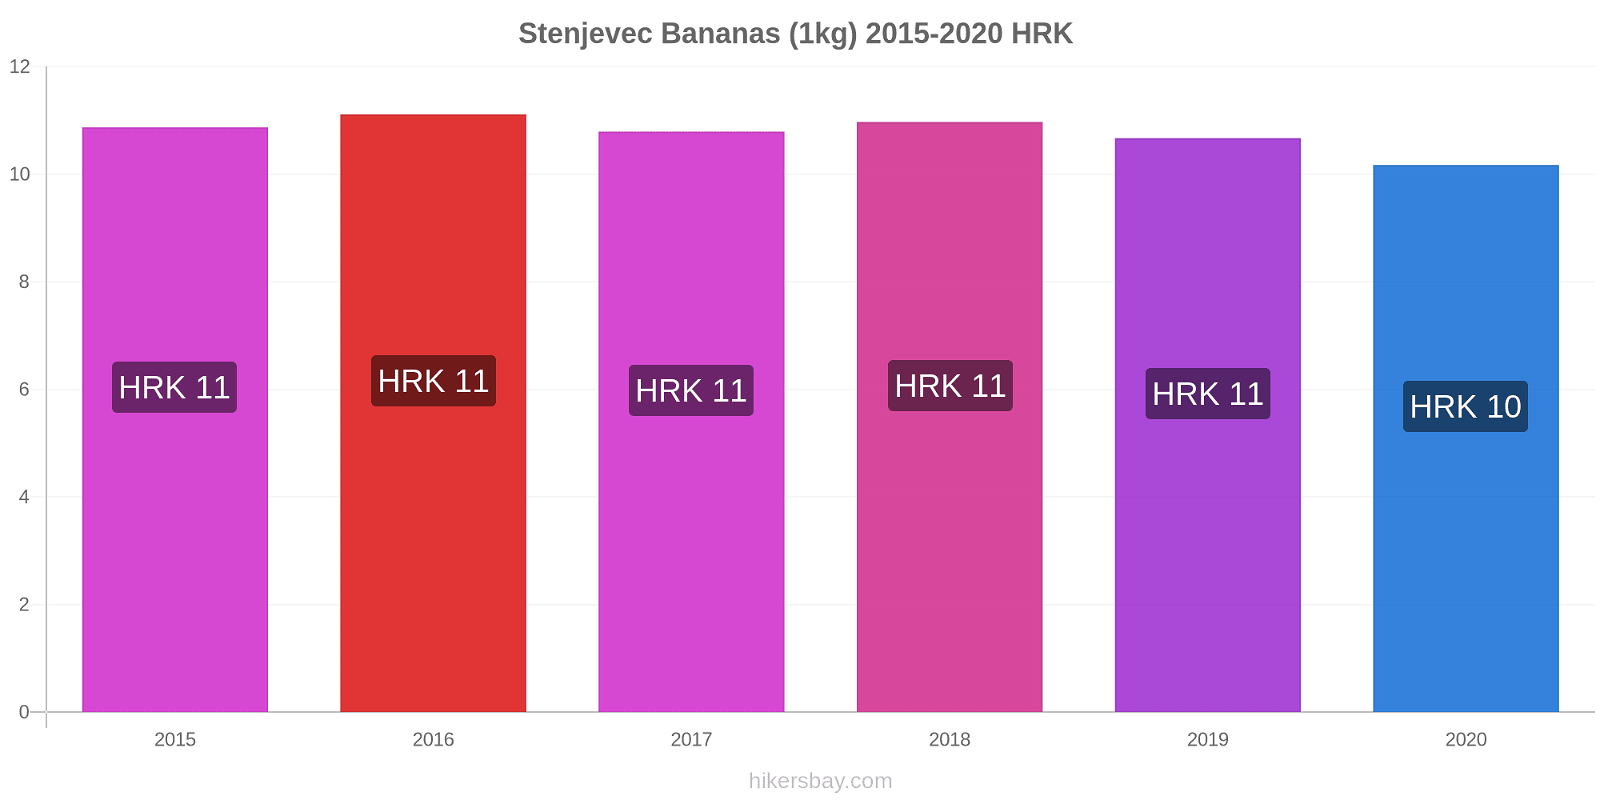 Stenjevec price changes Bananas (1kg) hikersbay.com